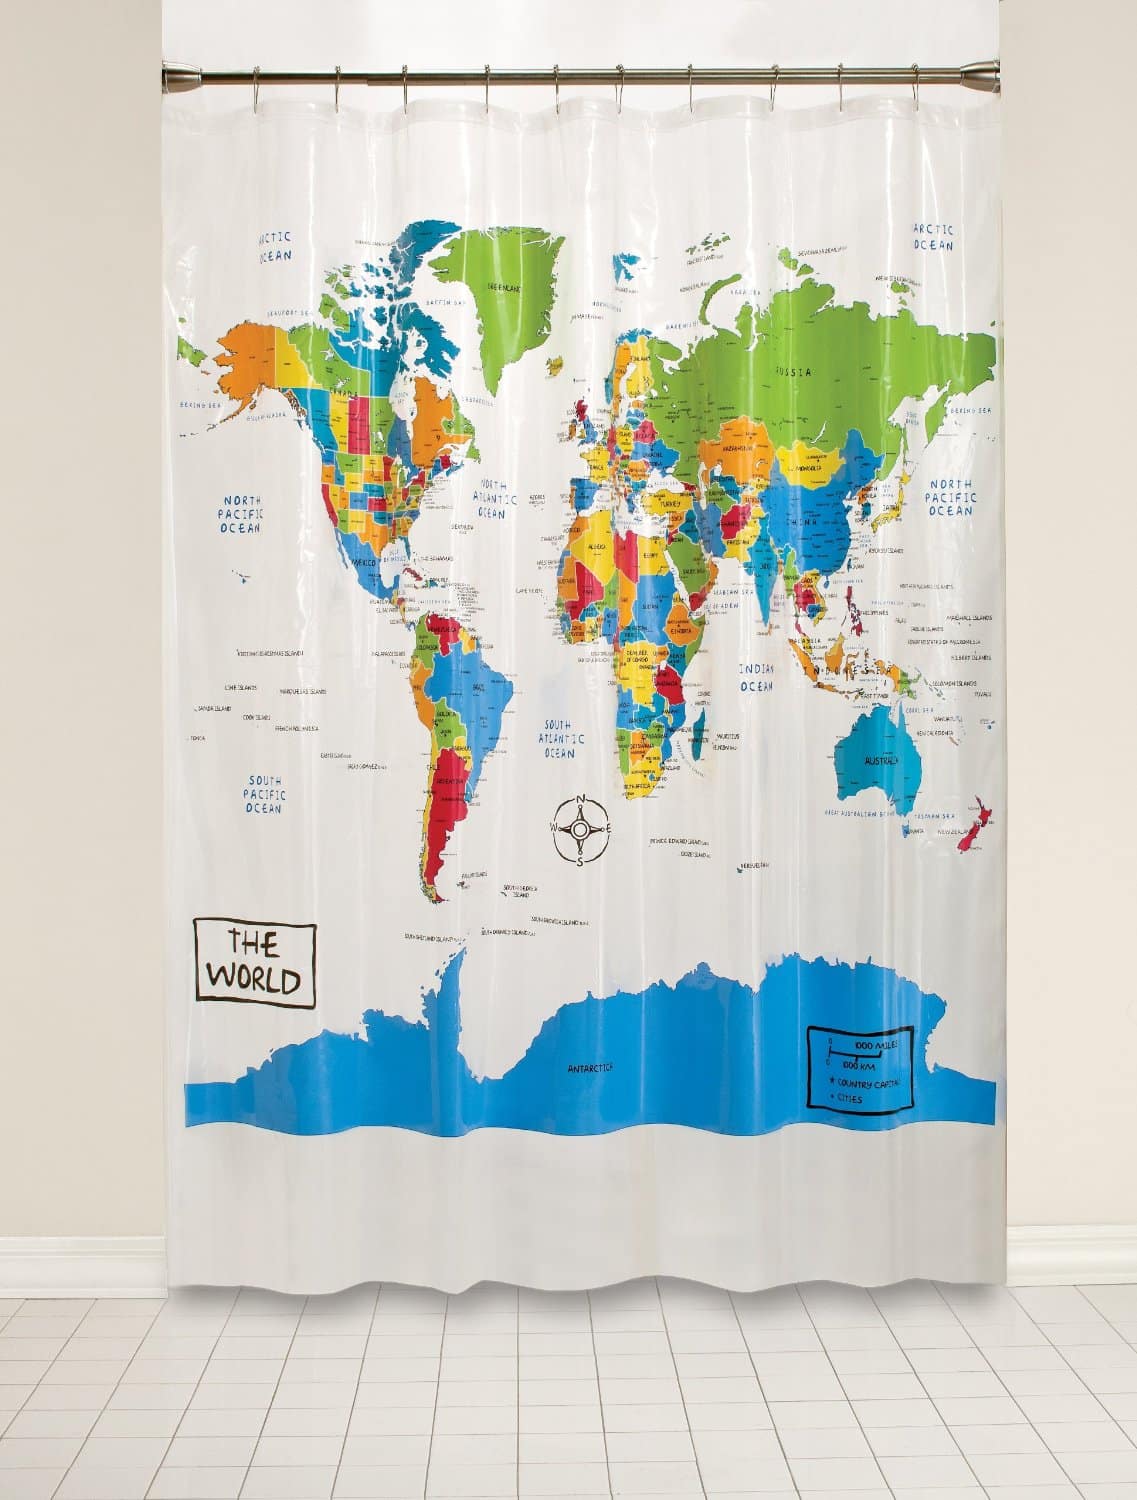 LIGHTNING DEAL ALERT! The World Peva Shower Curtain – 52% off